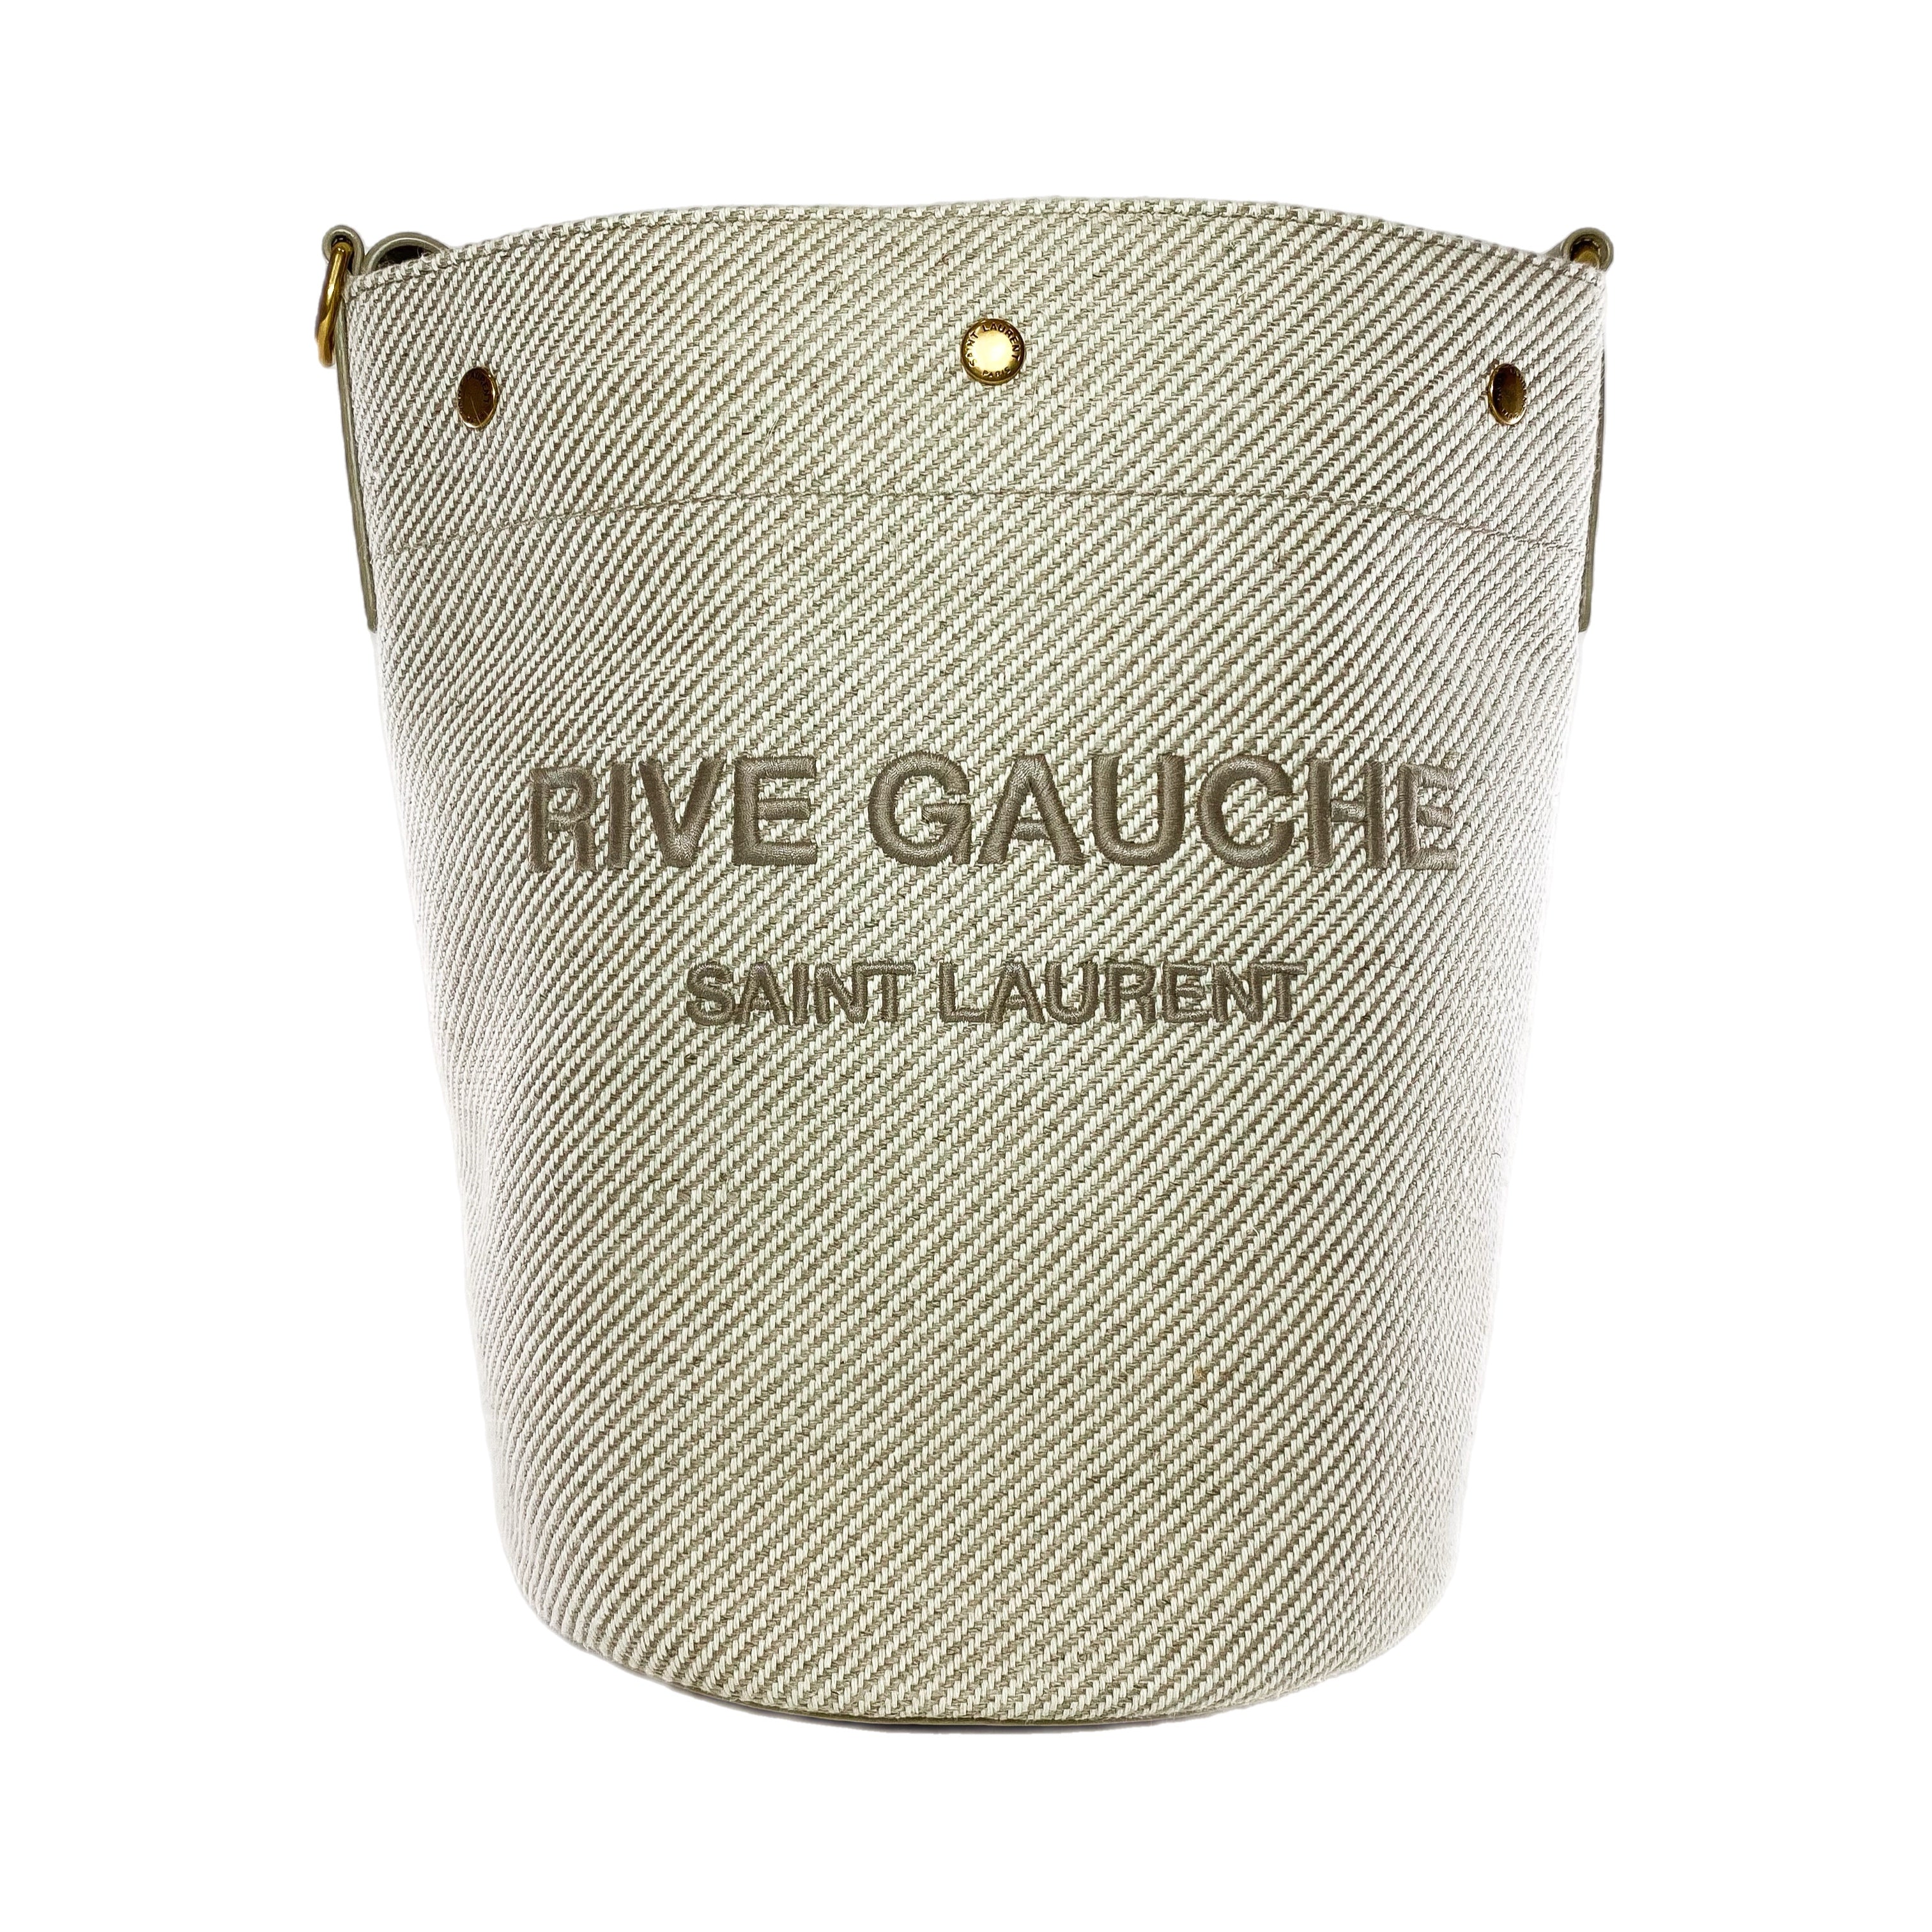 Saint Laurent Beige Canvas Bucket Bag